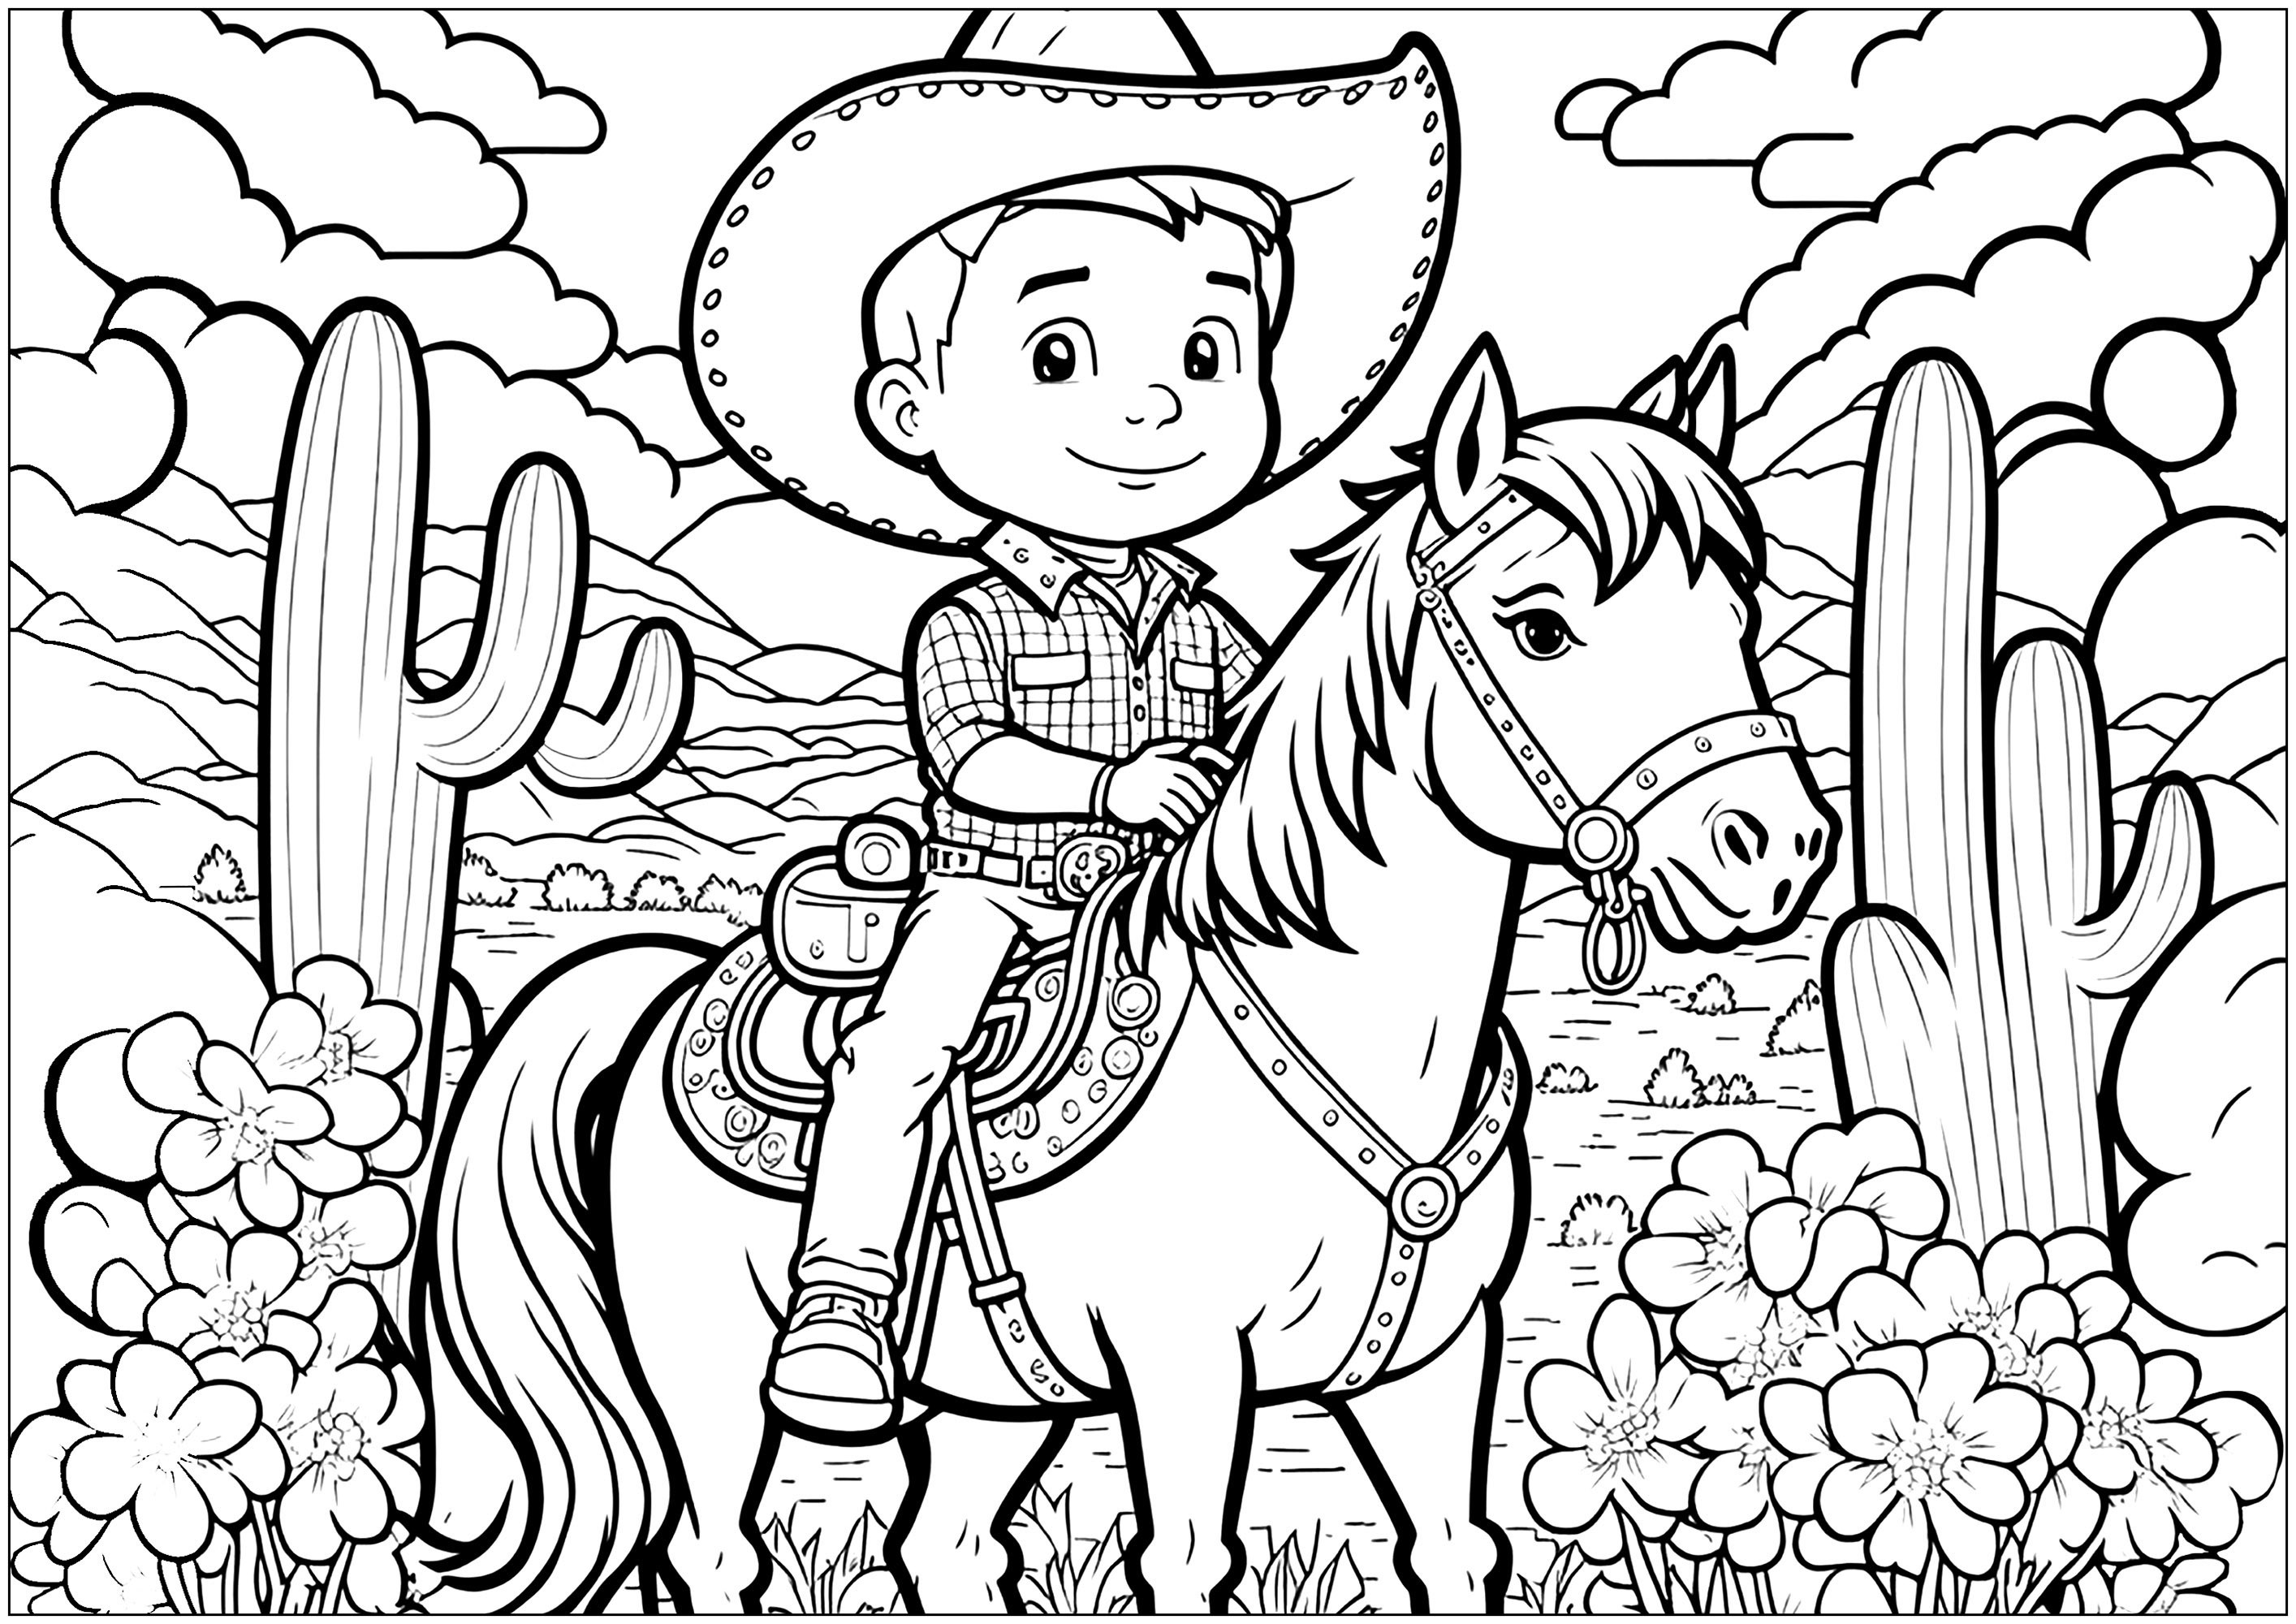 Un jeune cow-boy sur son cheval, avec un arrière-plan très fourni (montagnes, cactus, nuages ...)